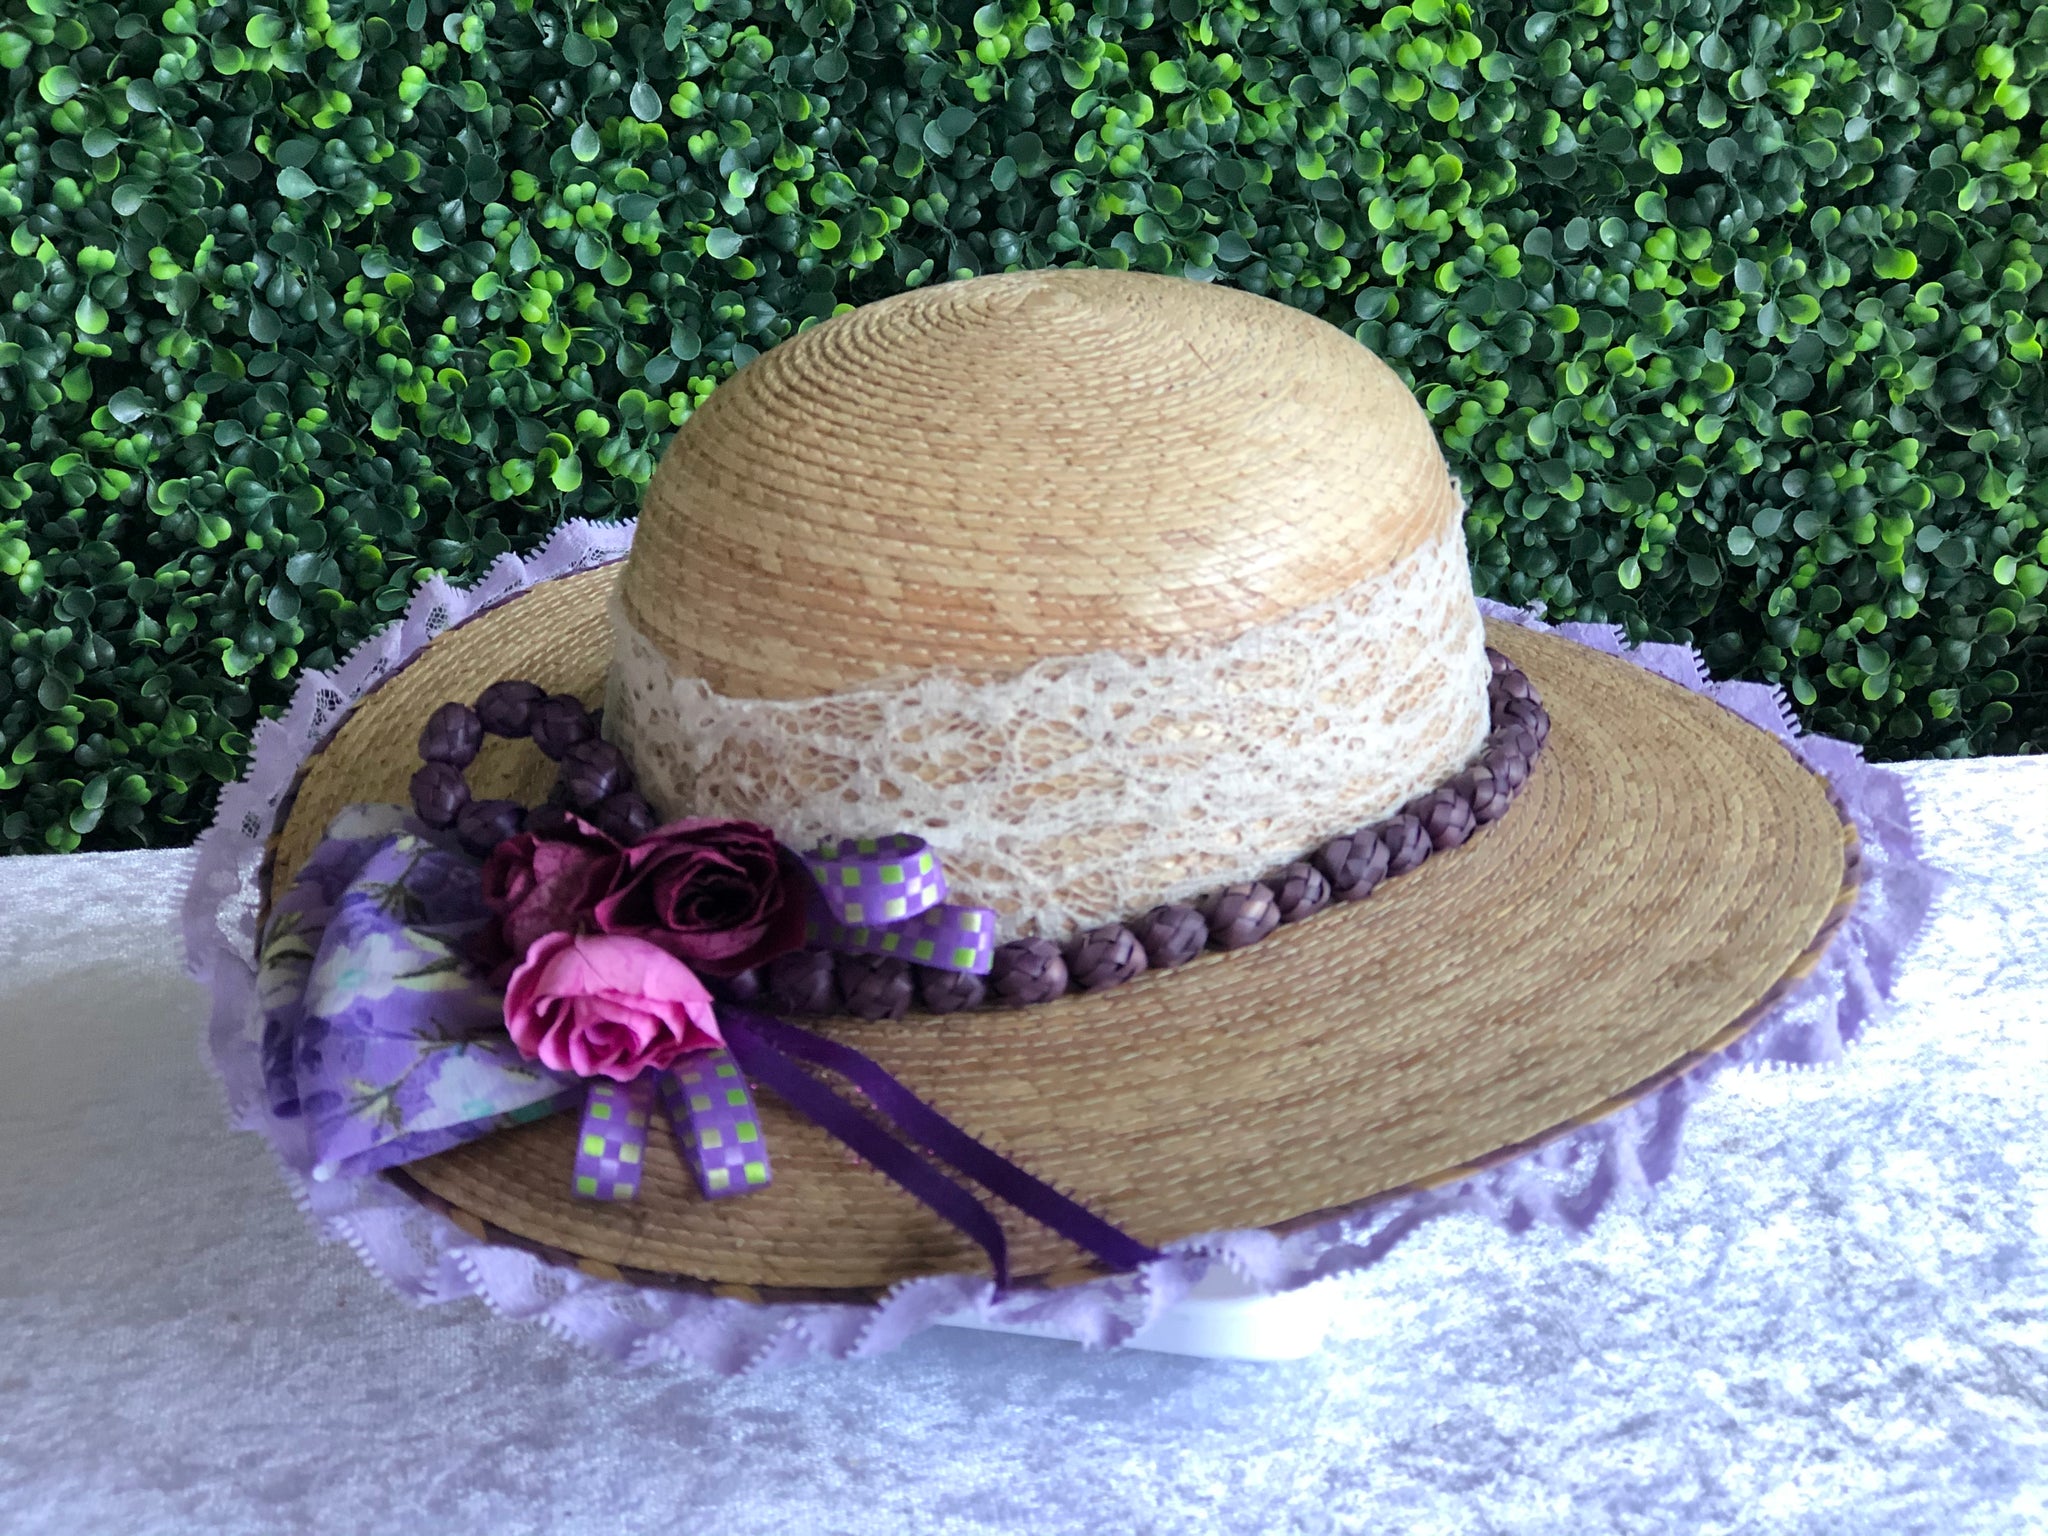 Sombrero para Dama con Arreglos Palma – Huaracheria El Pequeno Gigante